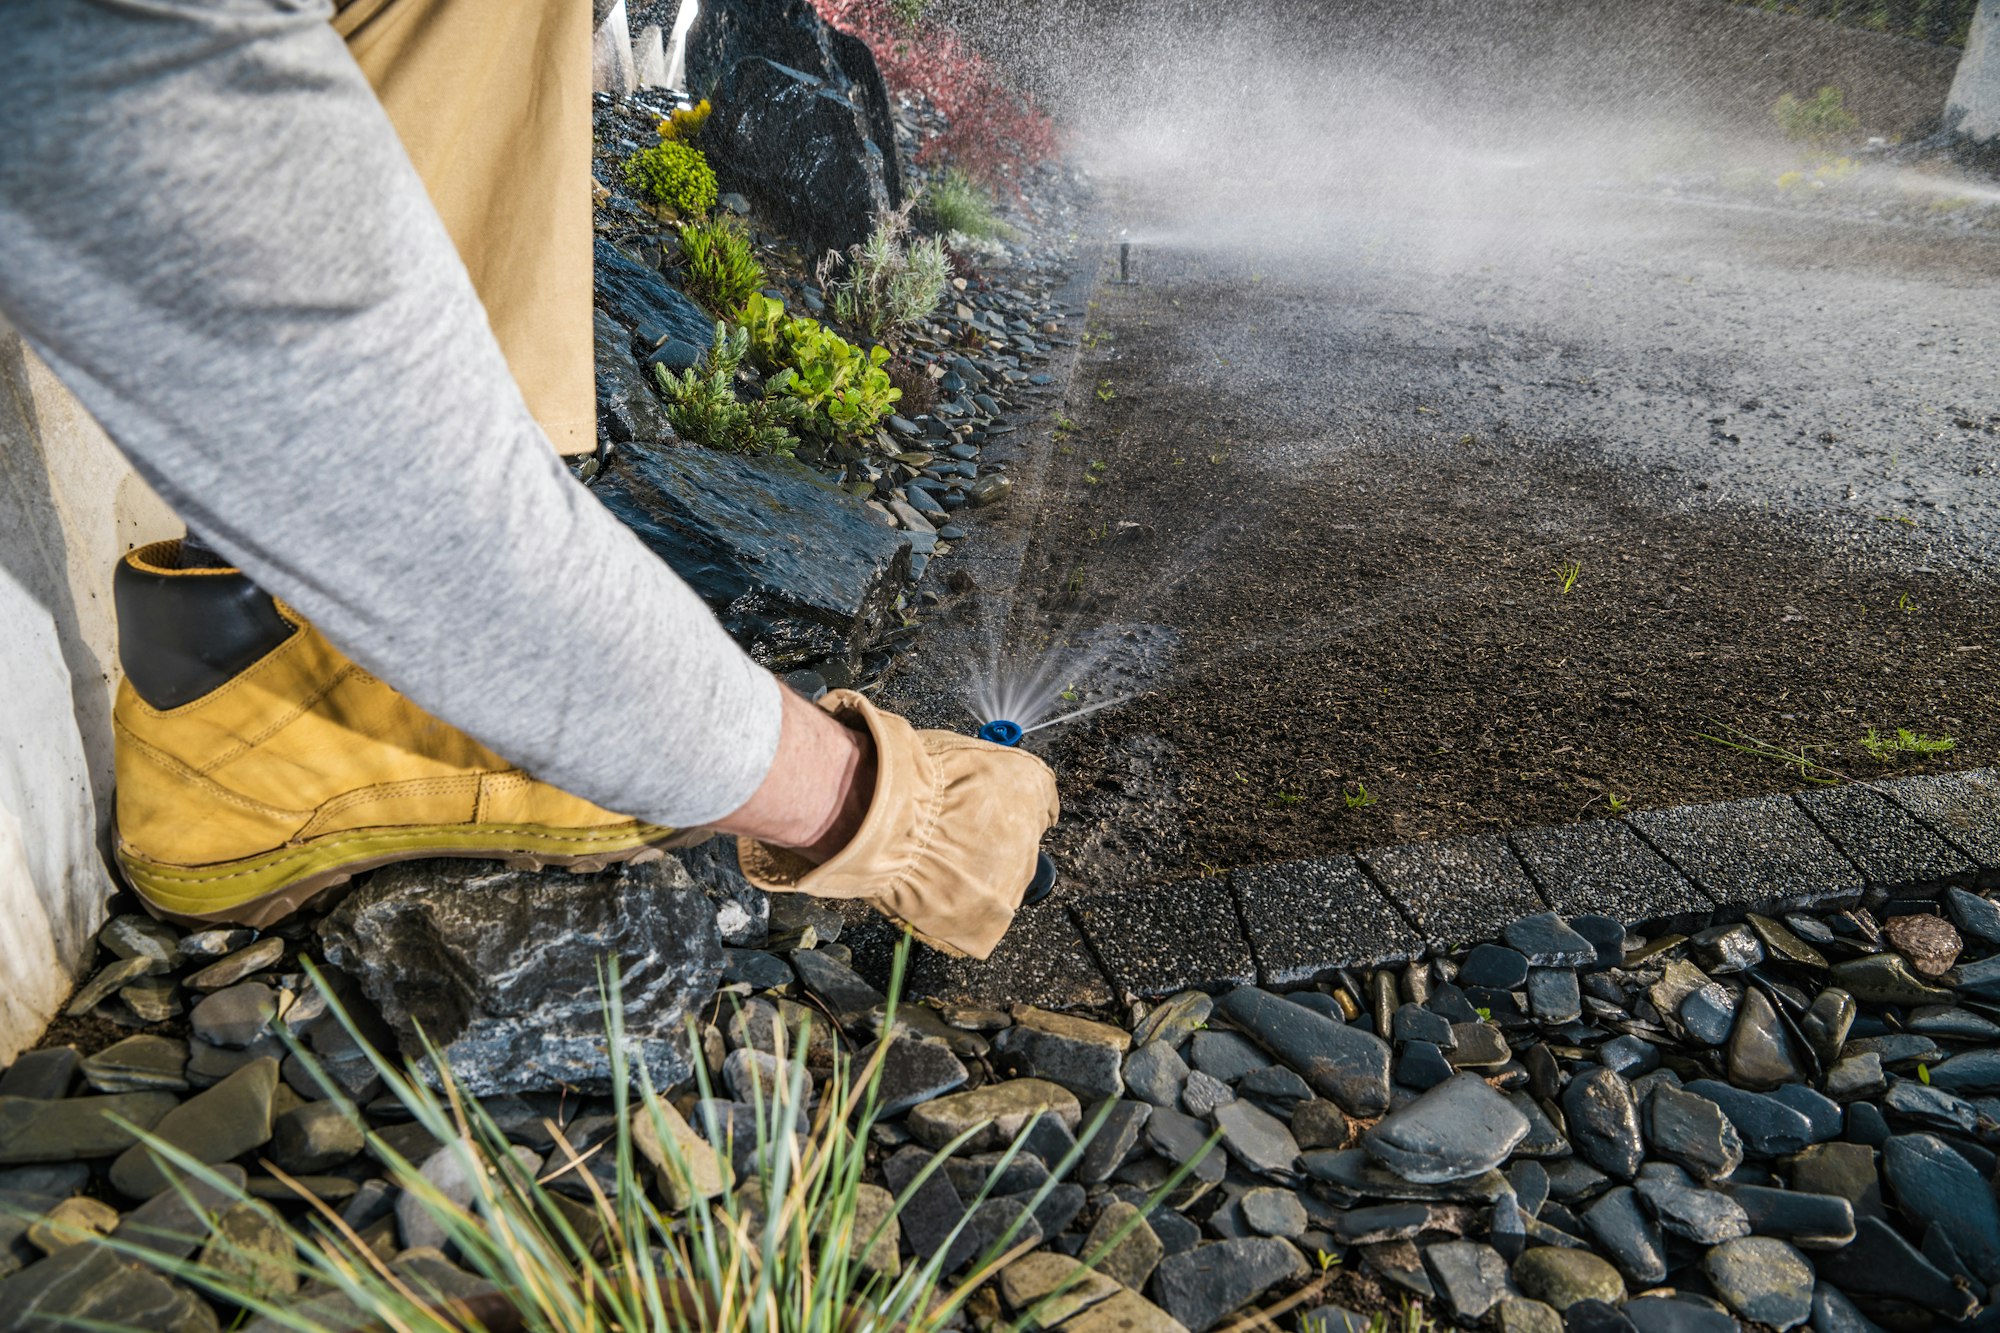 Landscaping Worker Adjusting Garden Water Sprinkler